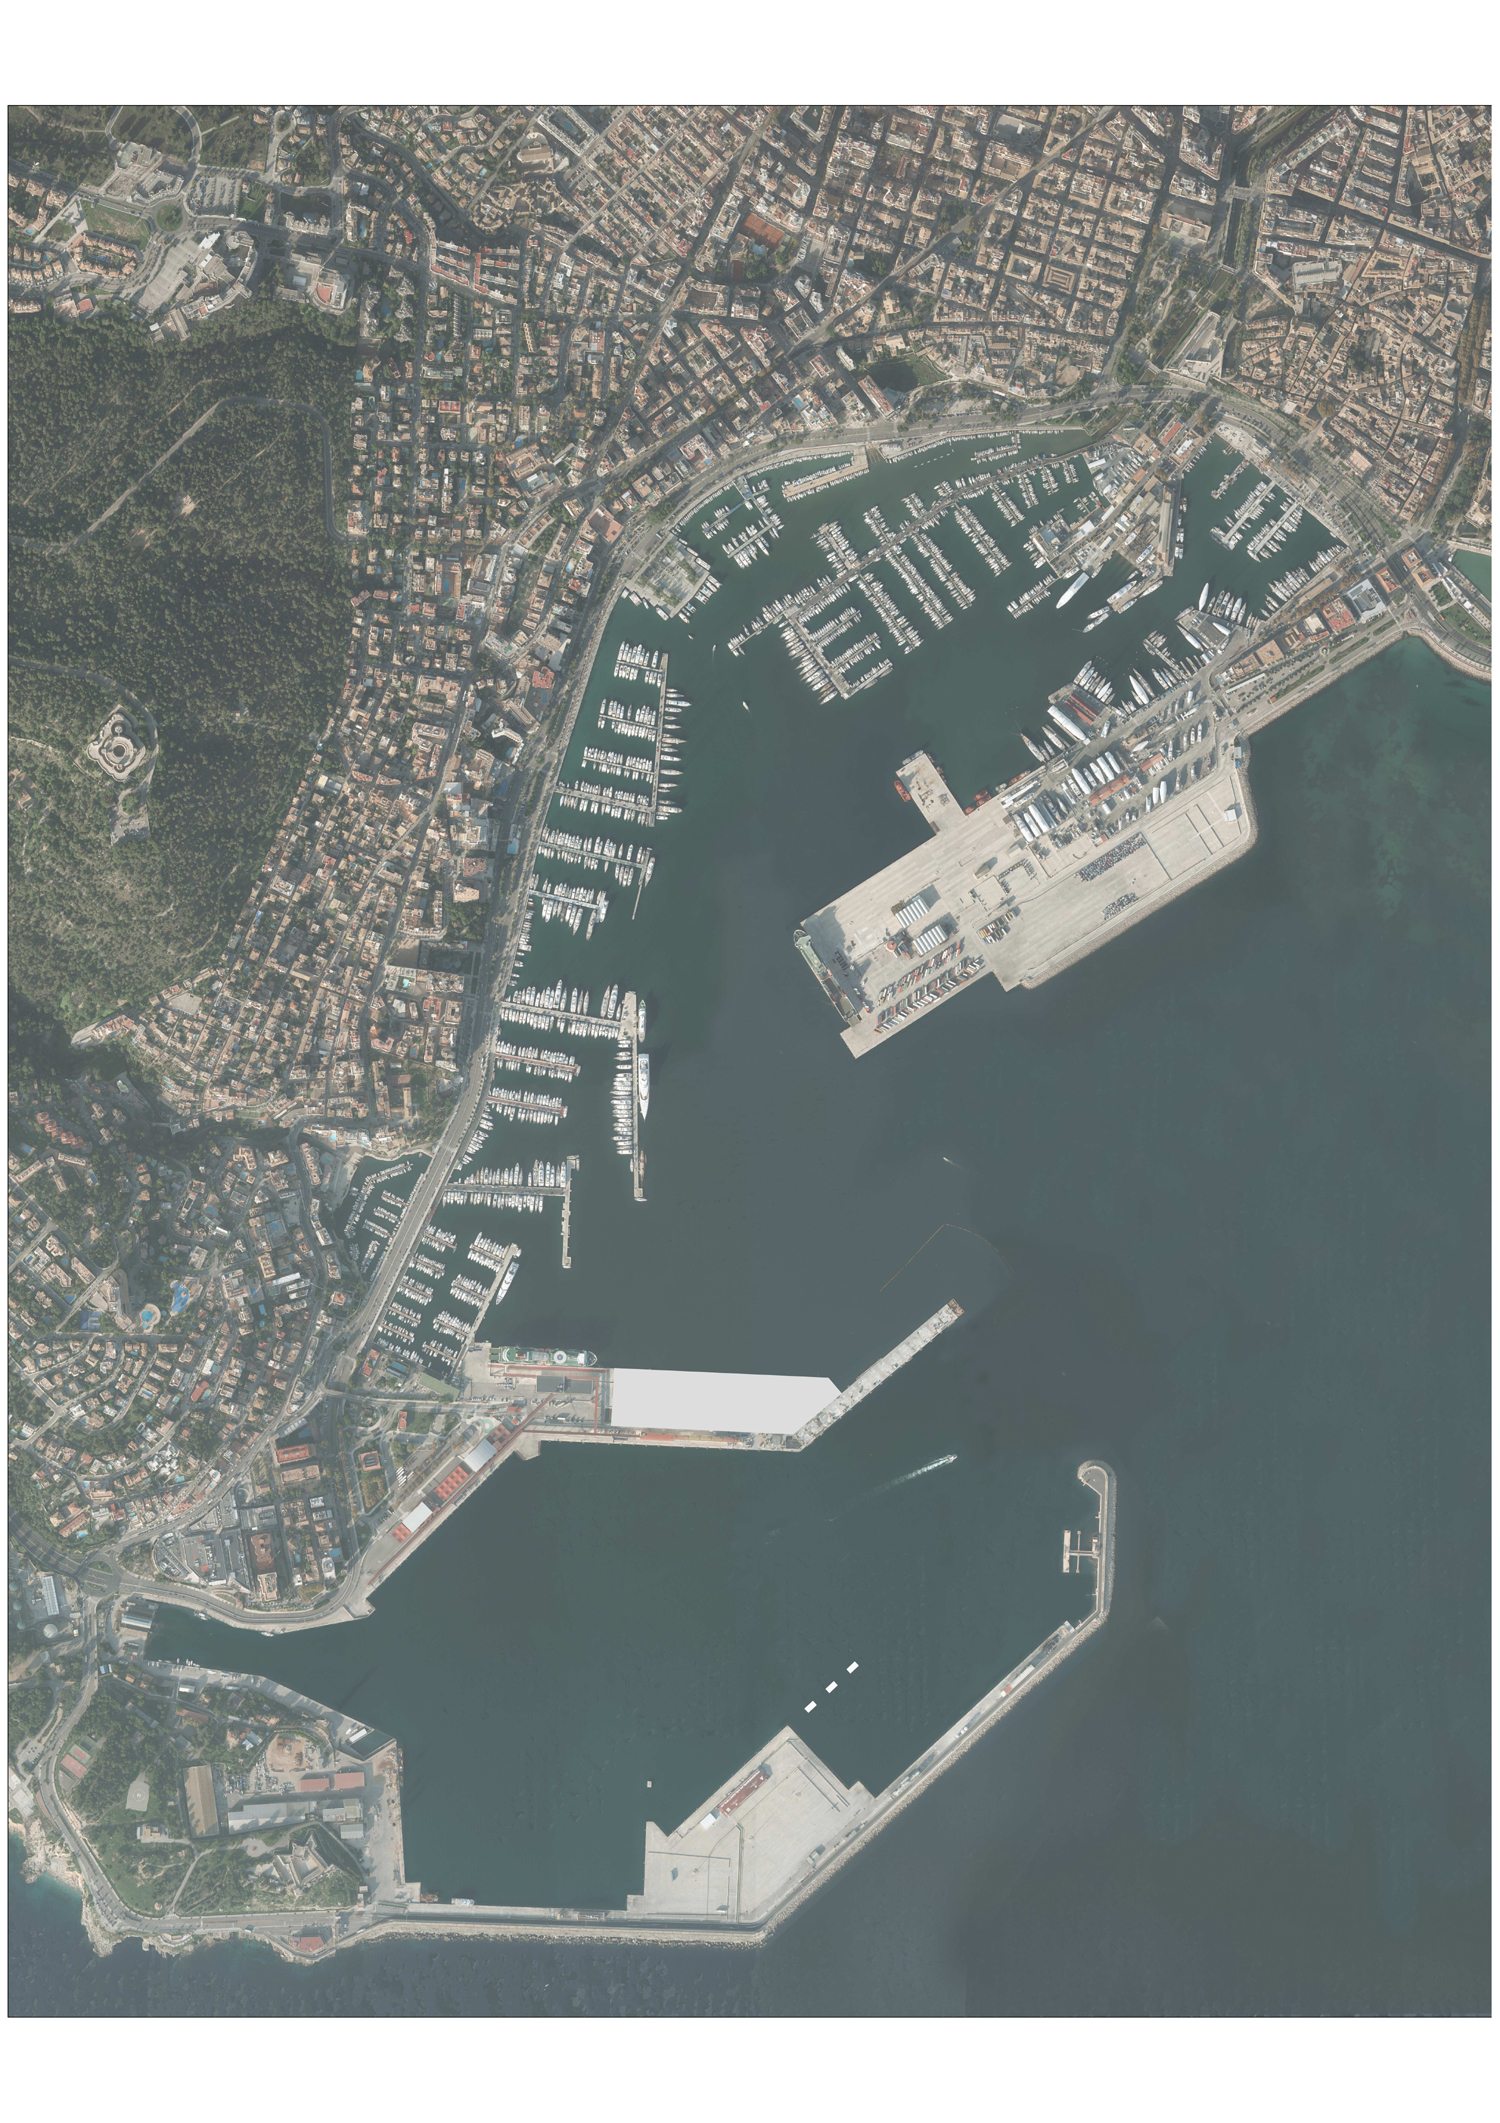 Concurso público para ampliar el Muelle Poniente Norte del puerto de Palma 